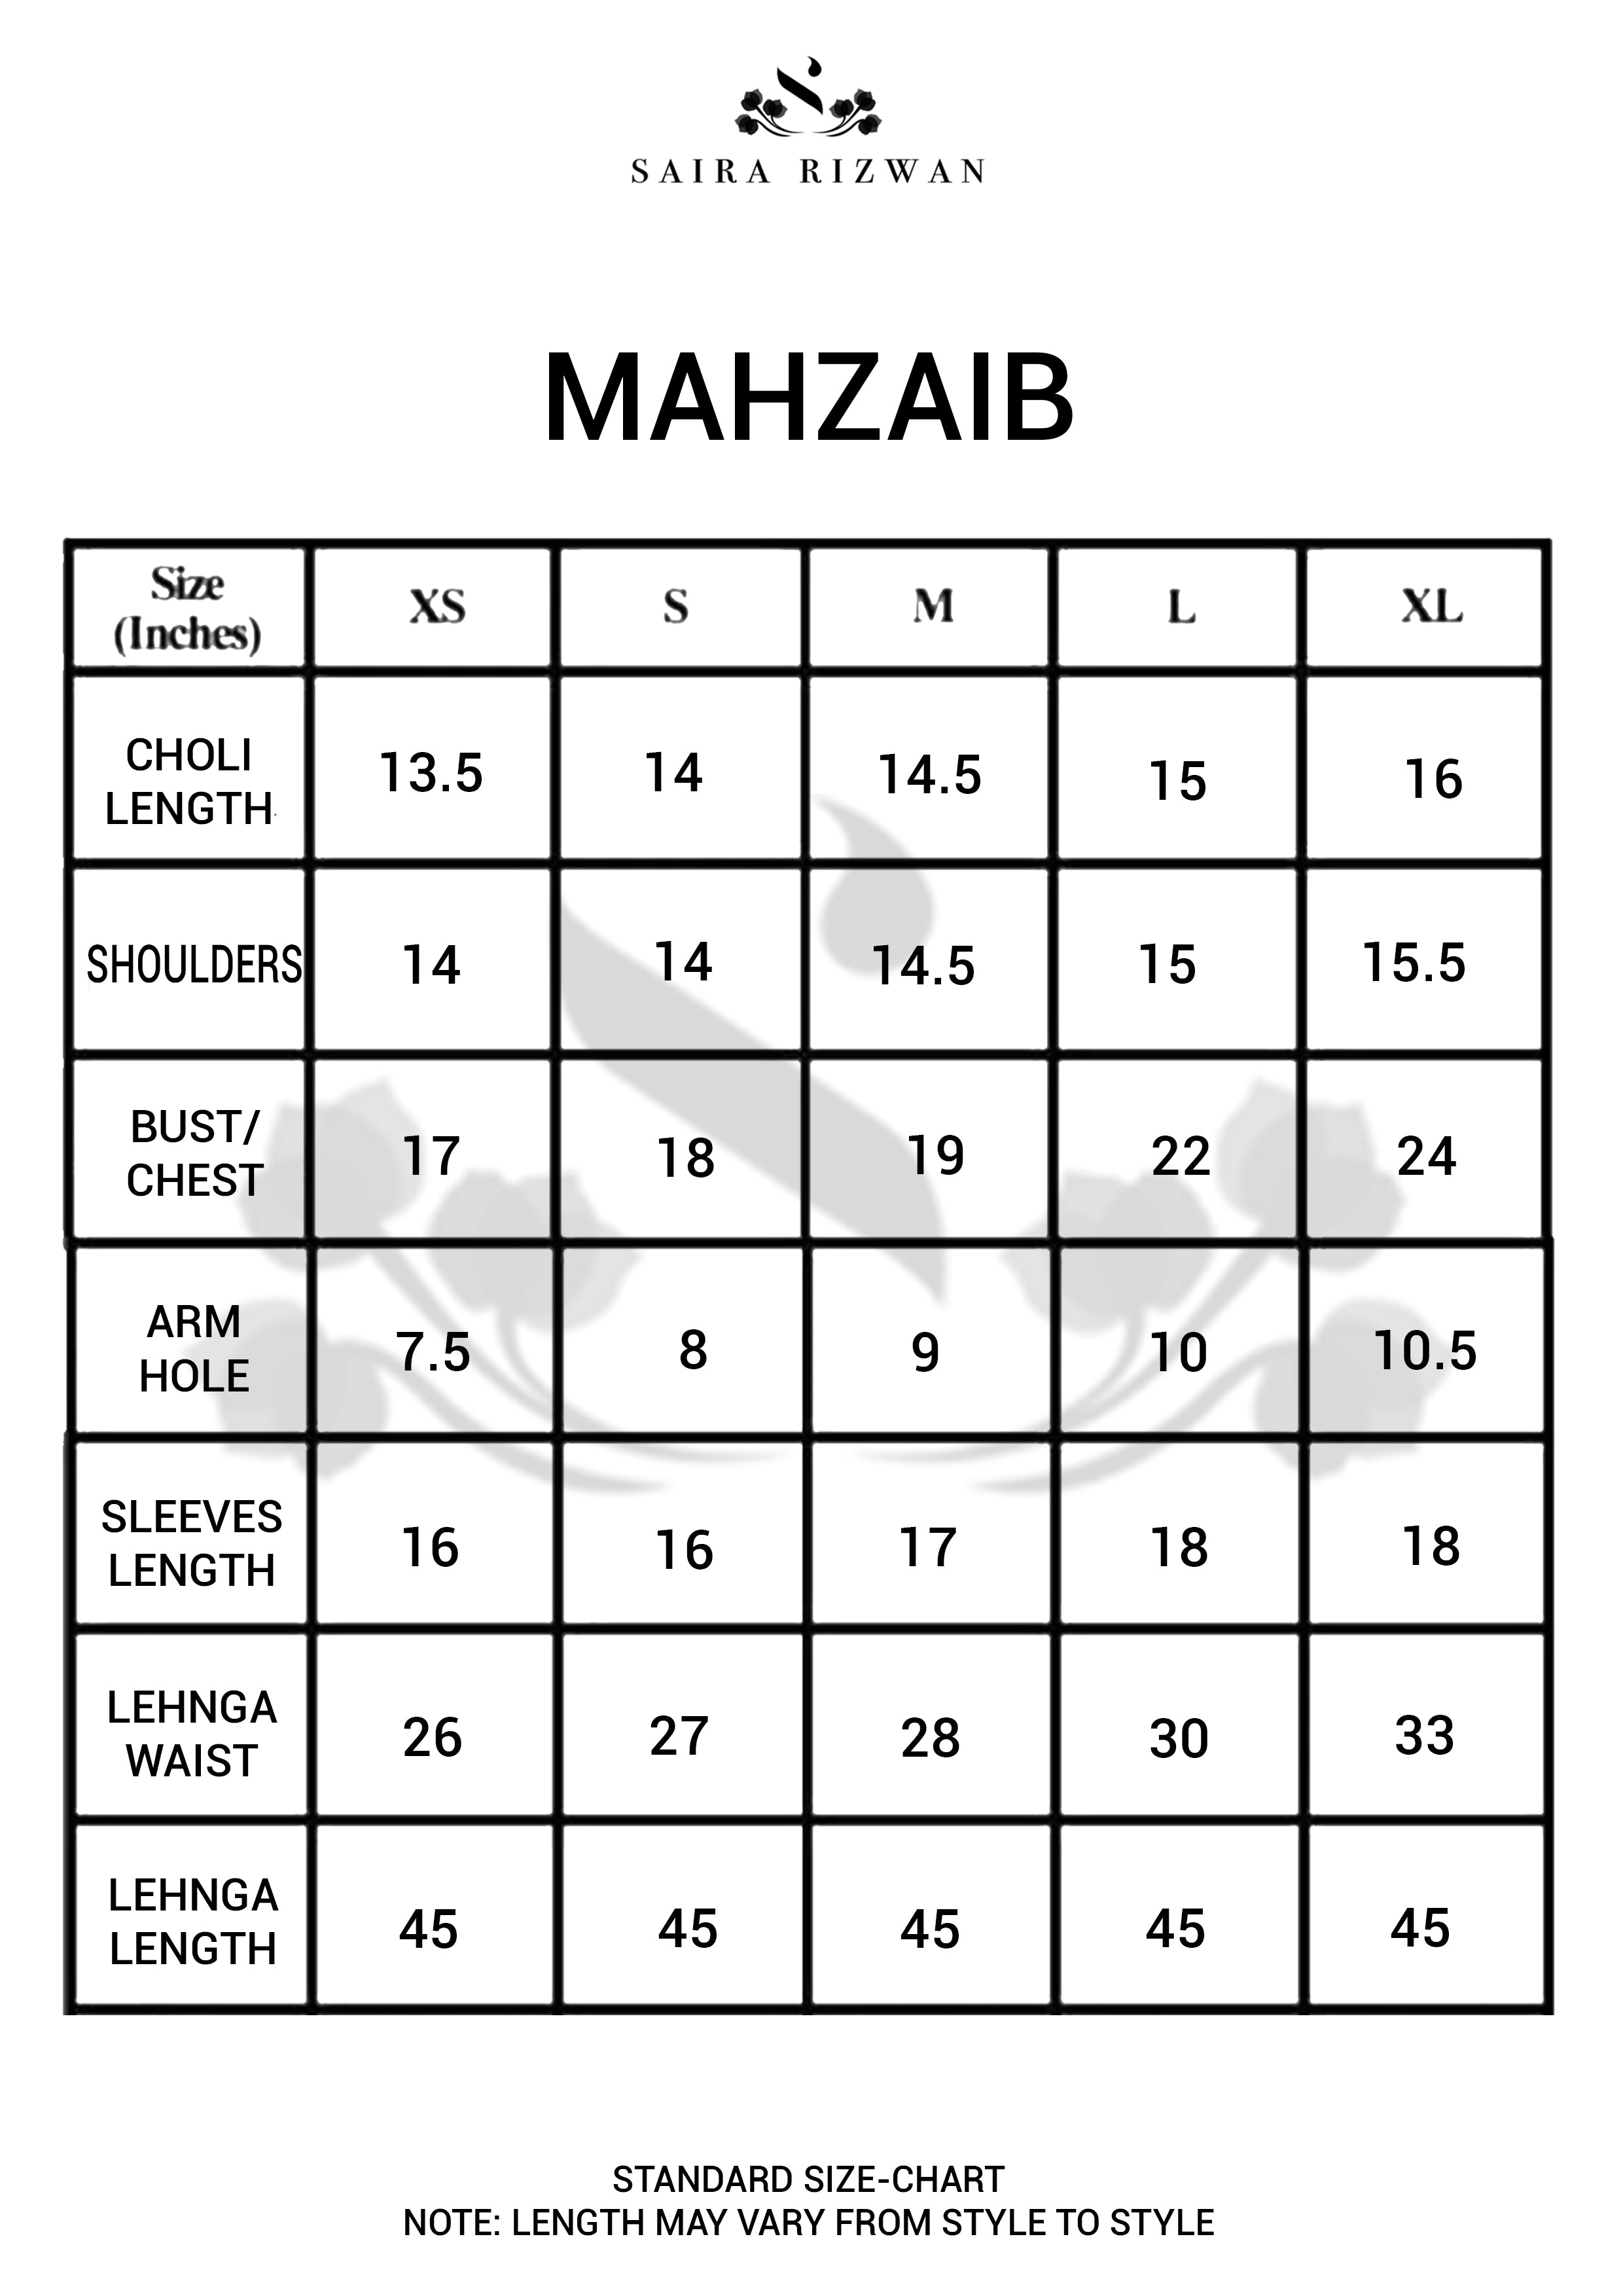 Mahzaib